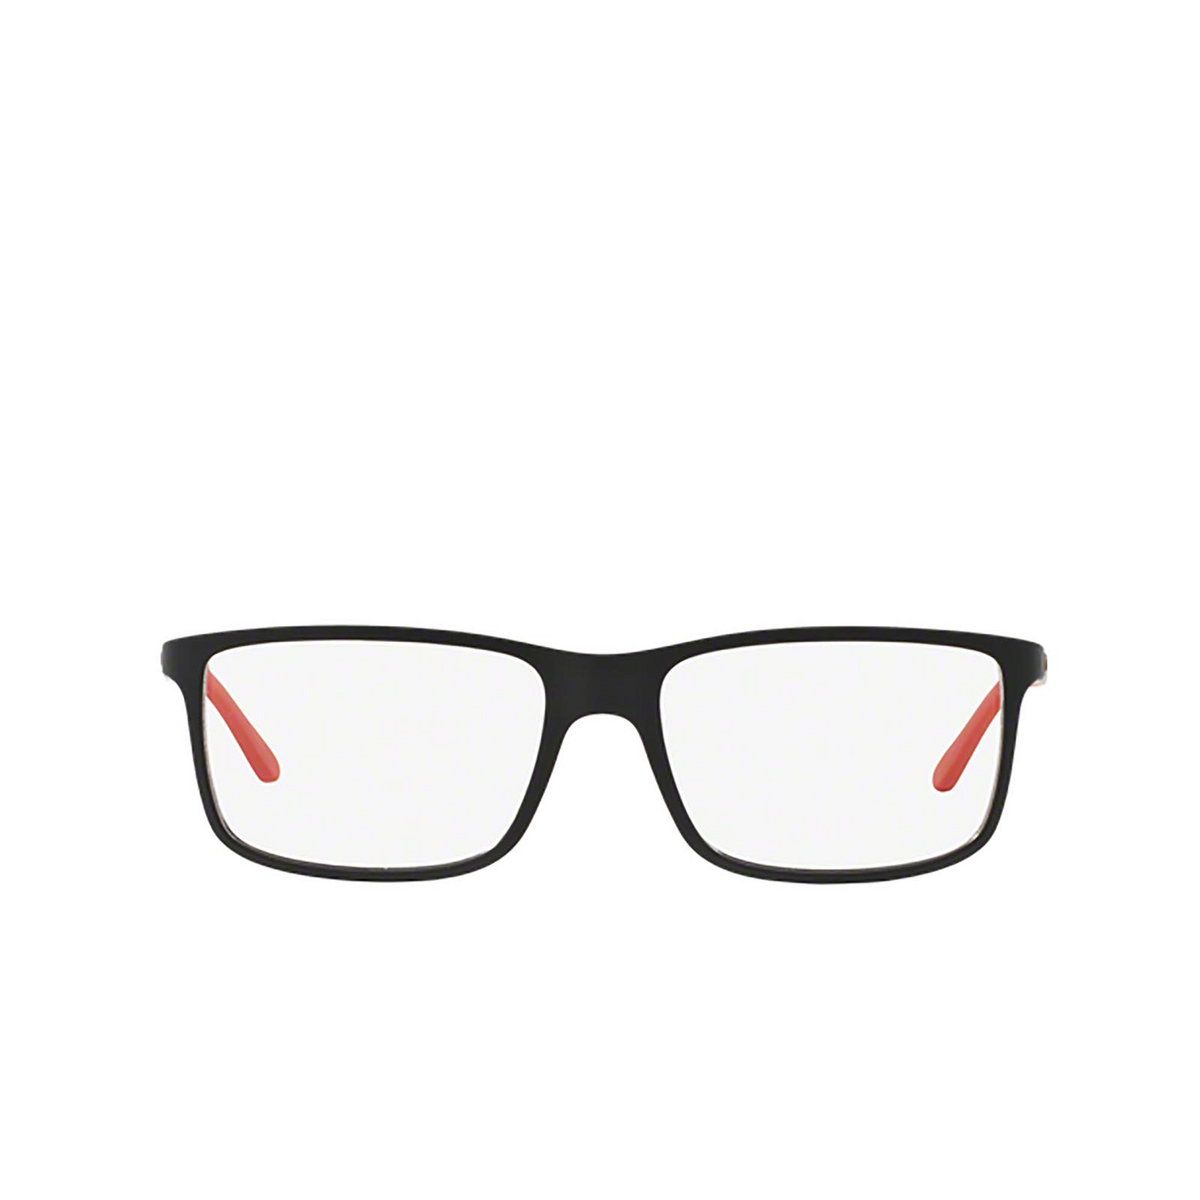 Polo Ralph Lauren® Rectangle Eyeglasses: PH2126 color Matte Black 5504 - front view.